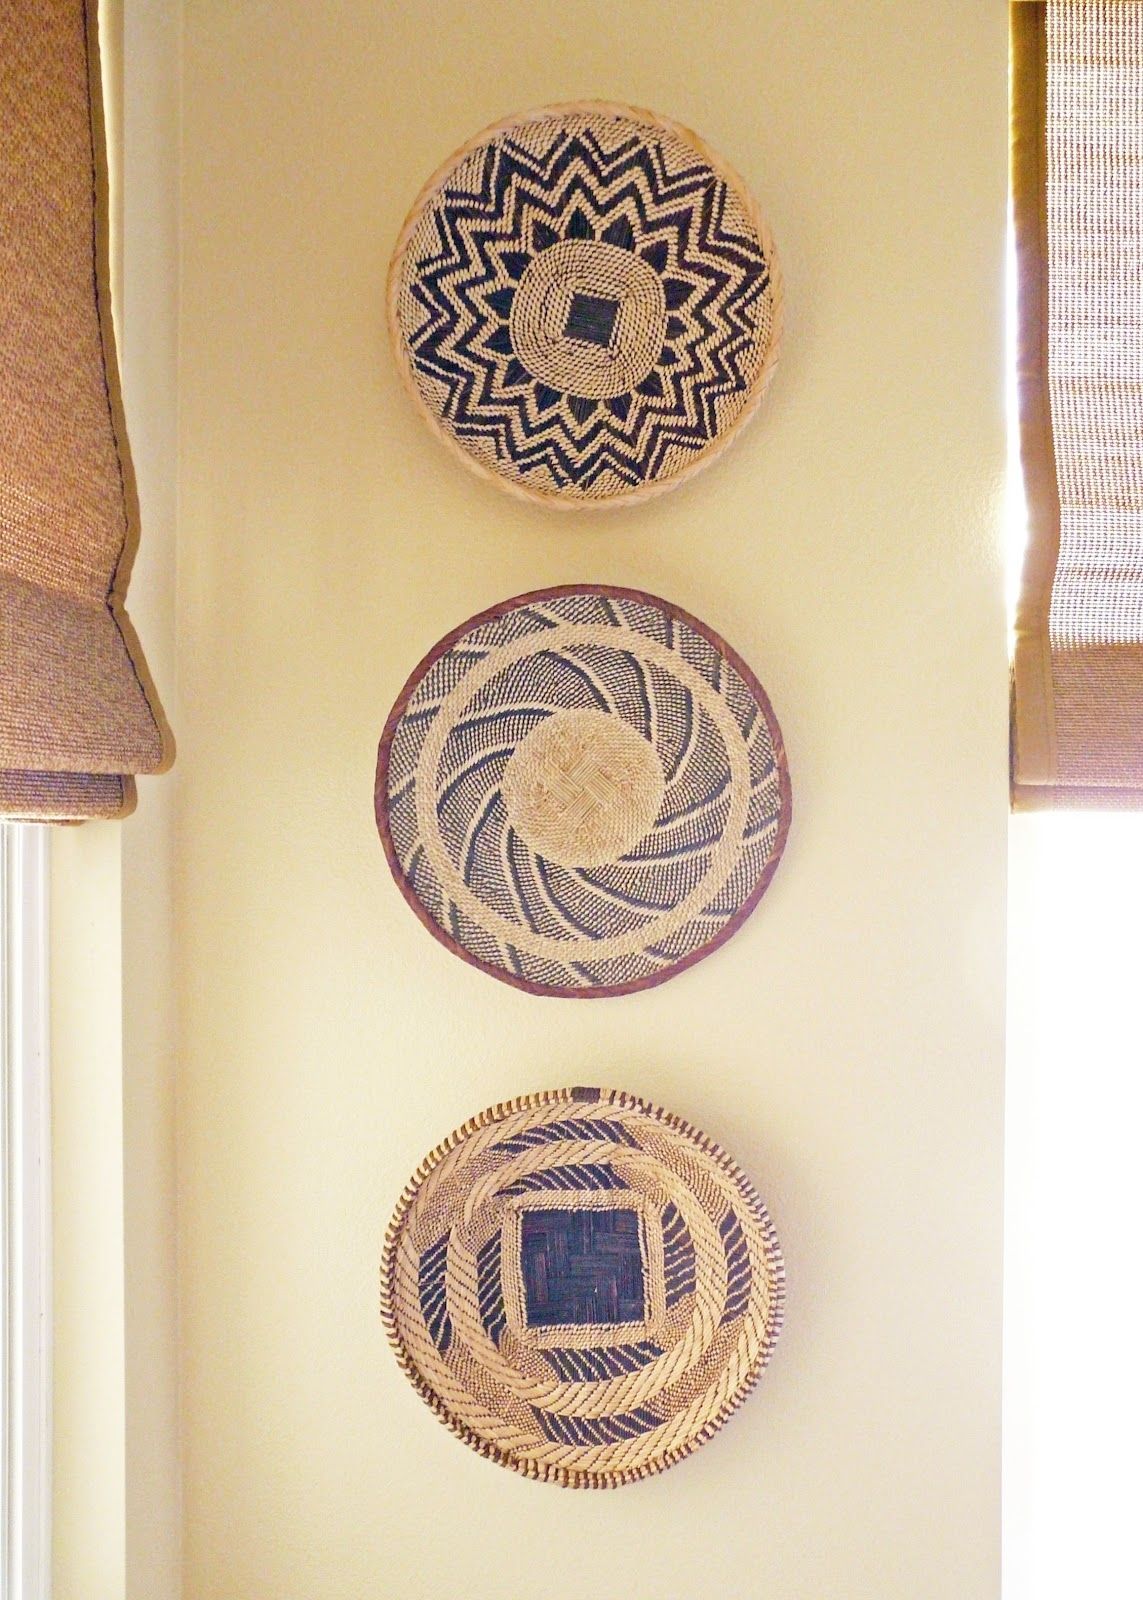 African Basket Wall Decor Newhairstylesformen2014com, Woven Basket With Woven Basket Wall Art (View 10 of 20)